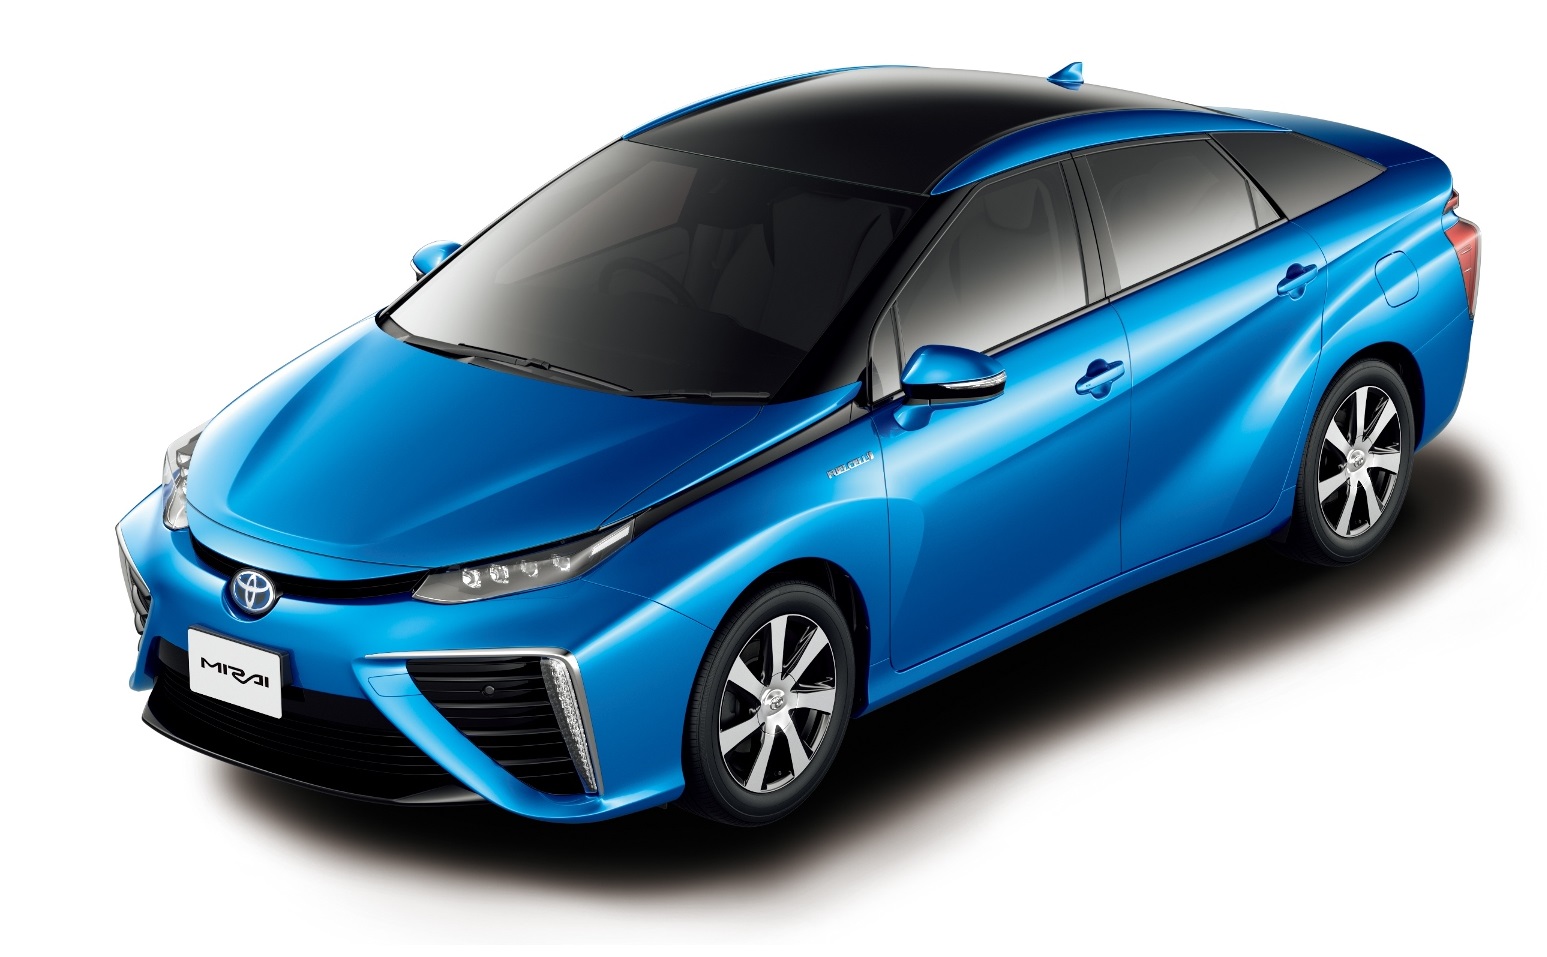 toyota-mirai-fuel-cell-sedan-launch-date-in-japan-15-dec